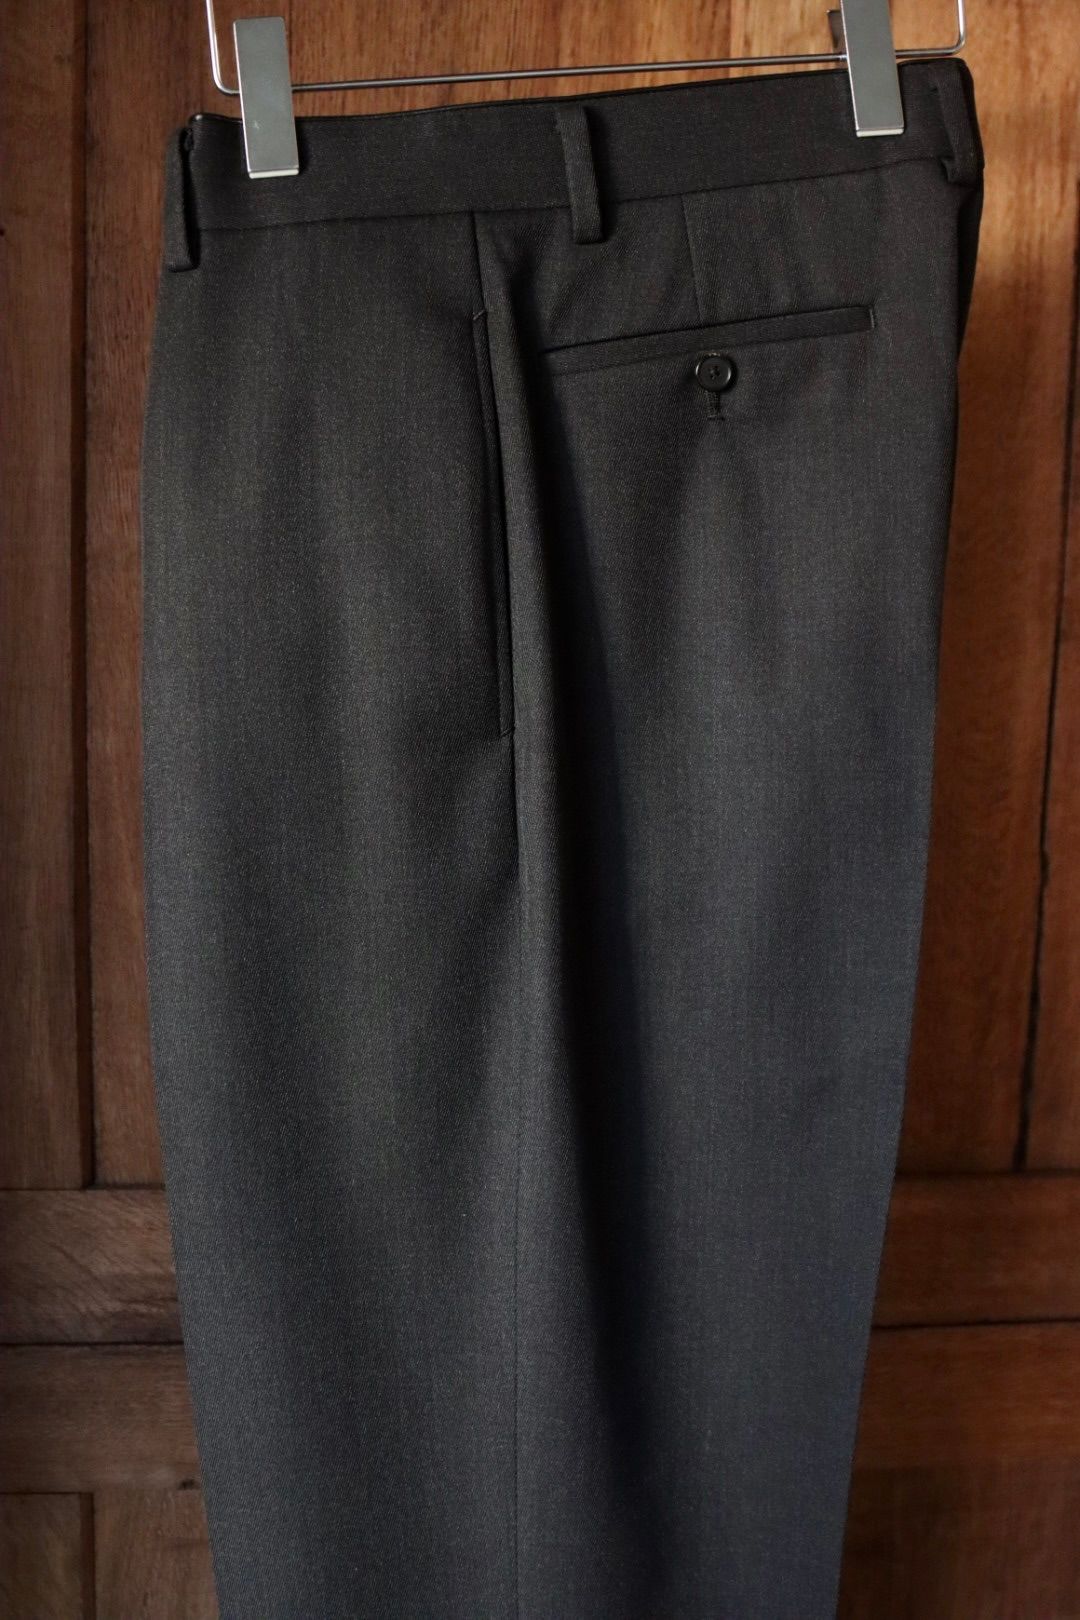 アプレッセ24SS Covert Cloth Trousers(24SAP-04-18H)CHARCOAL☆1月27日(土)発売！ - 1(S)